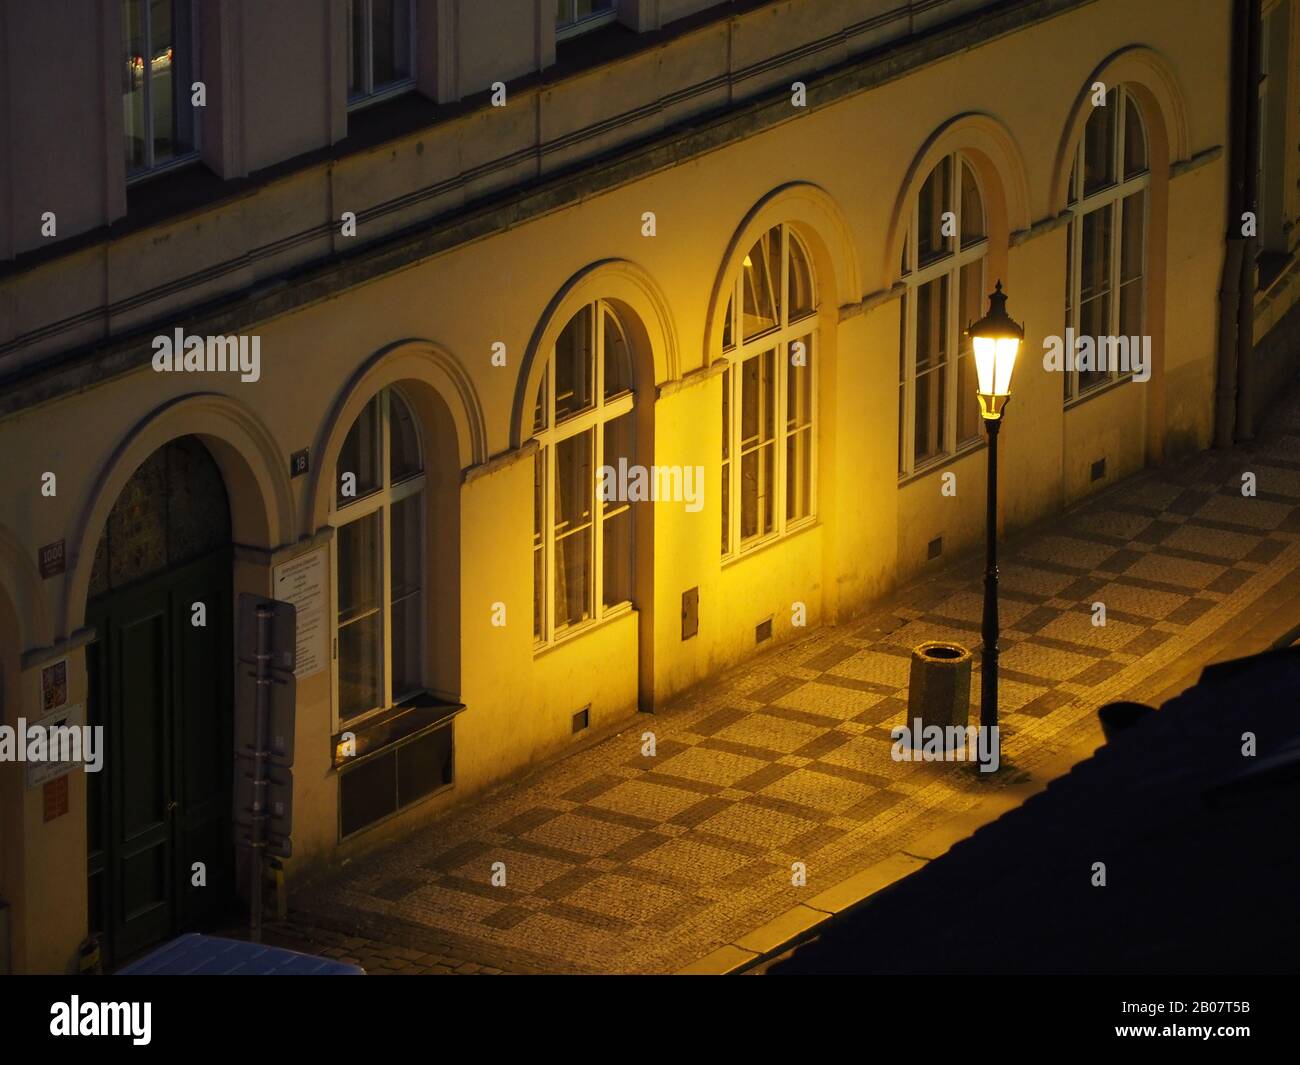 Strada deserta di notte a Praga, Repubblica Ceca, illuminata da lampione. Il centro storico di Praga è patrimonio dell'umanità dell'UNESCO. Foto Stock